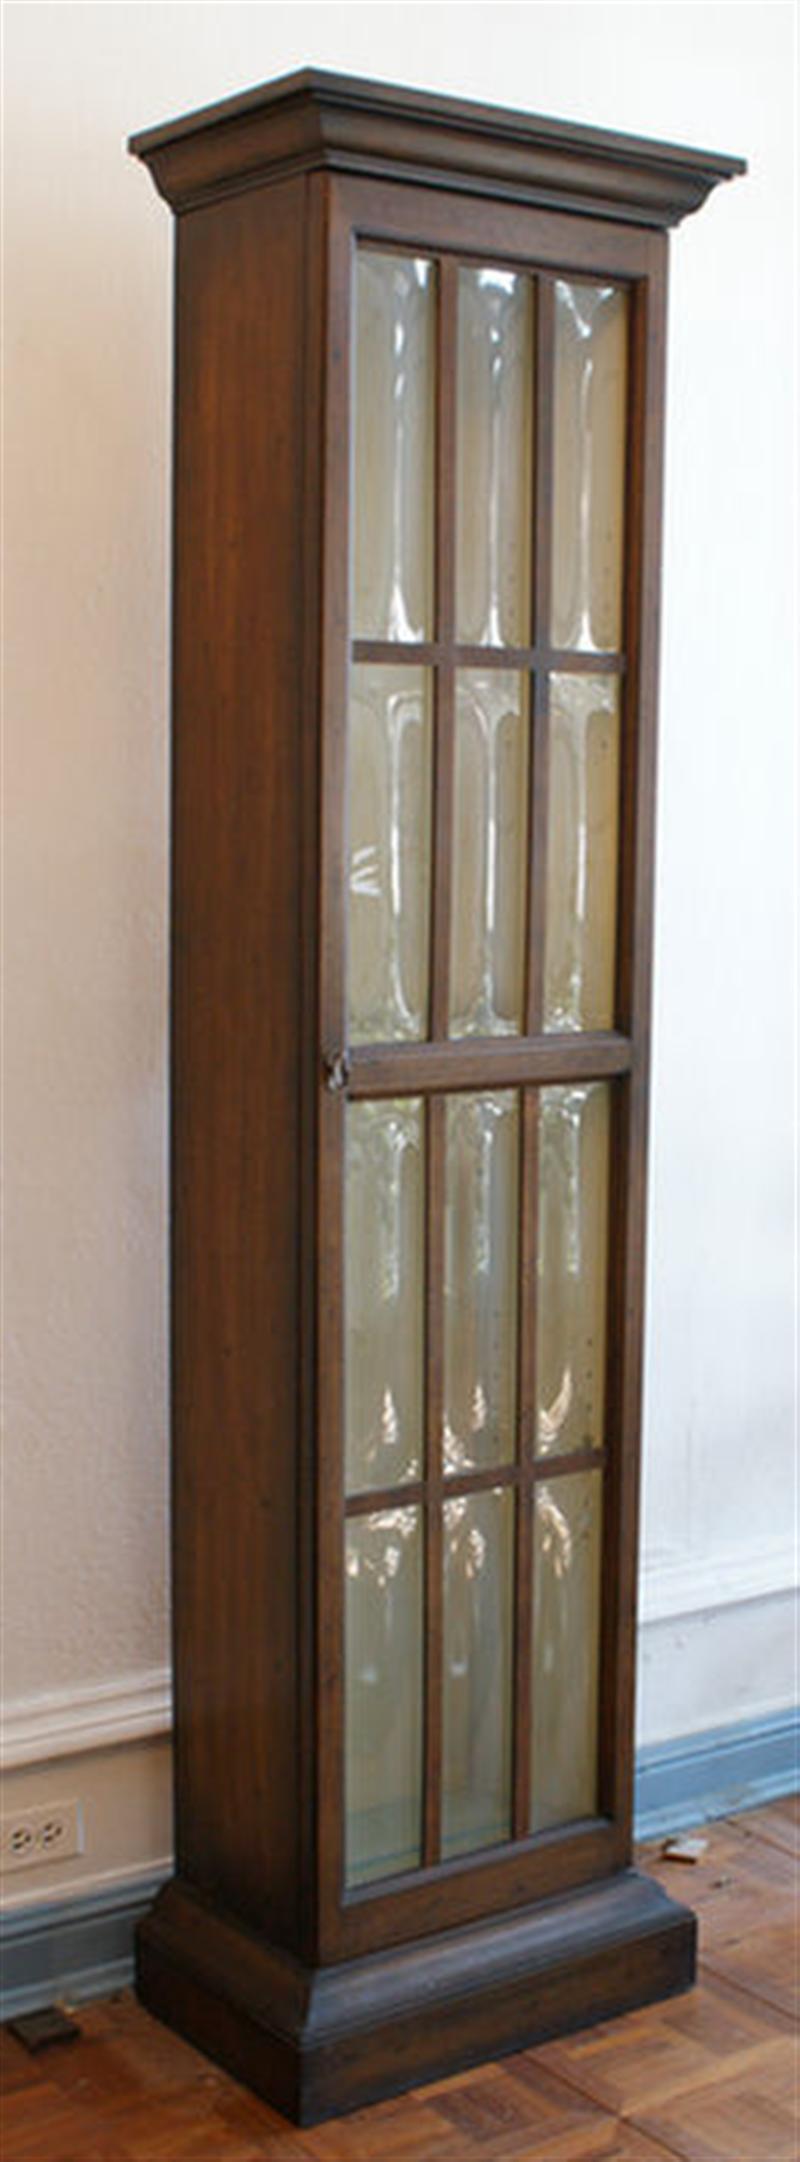 Single door mahogany curio cabinet